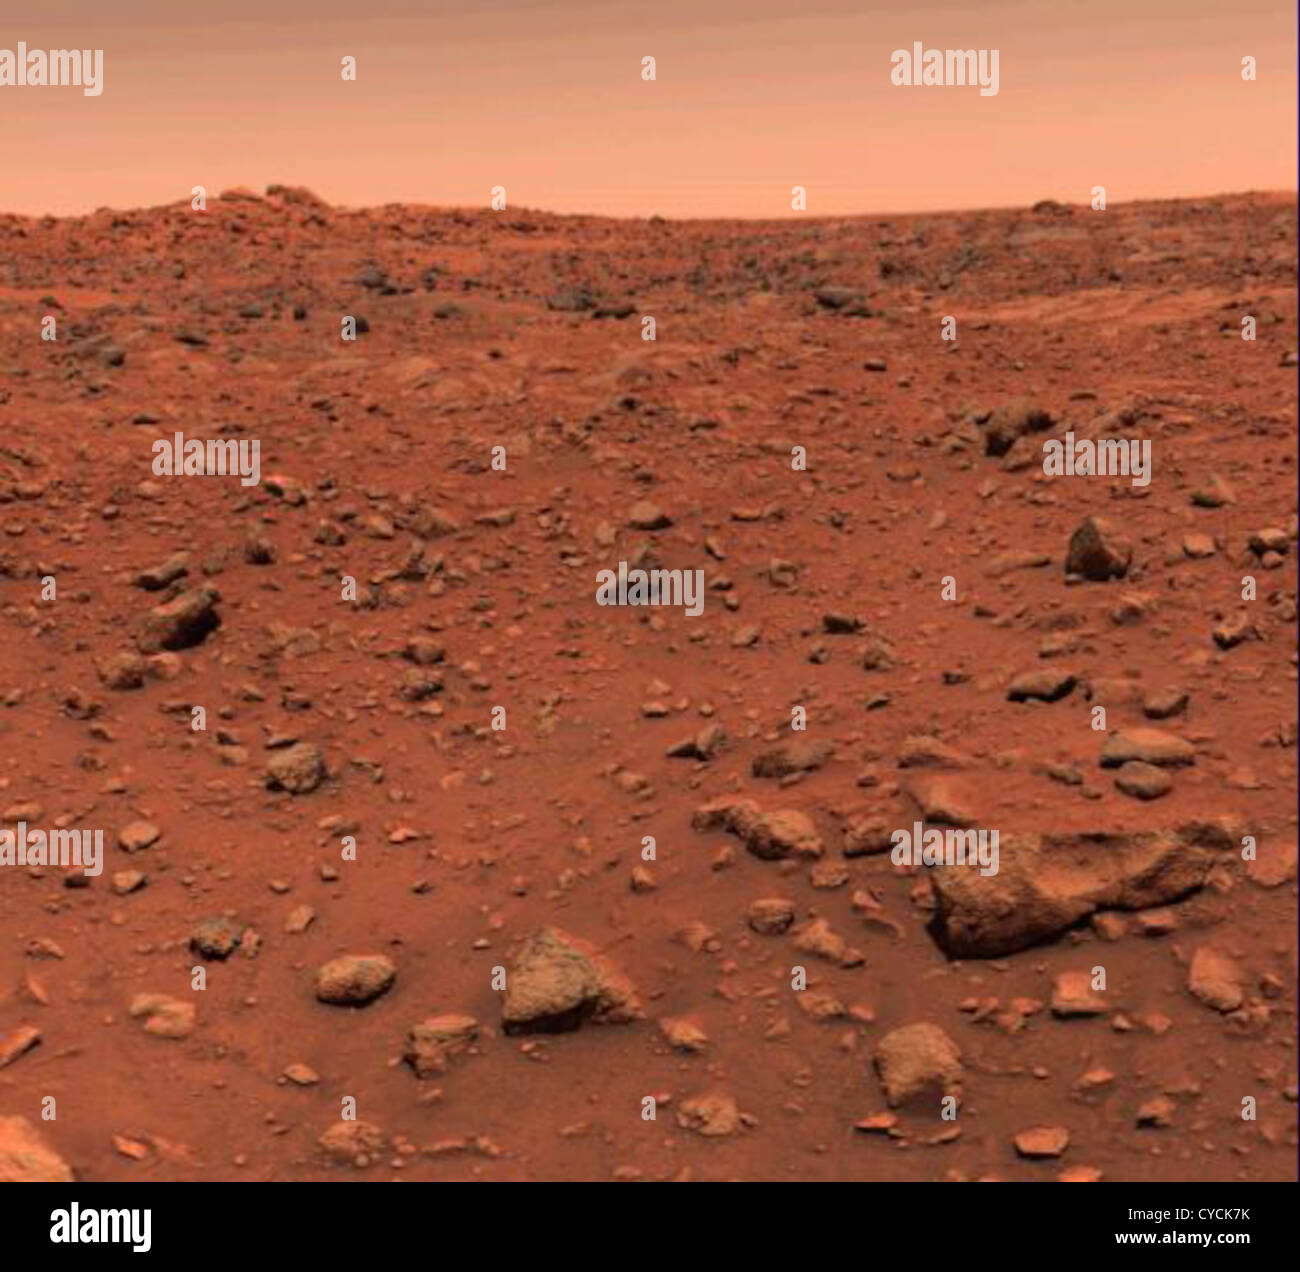 Première image en couleur de Lander Viking 1 sur Mars Photo Stock - Alamy